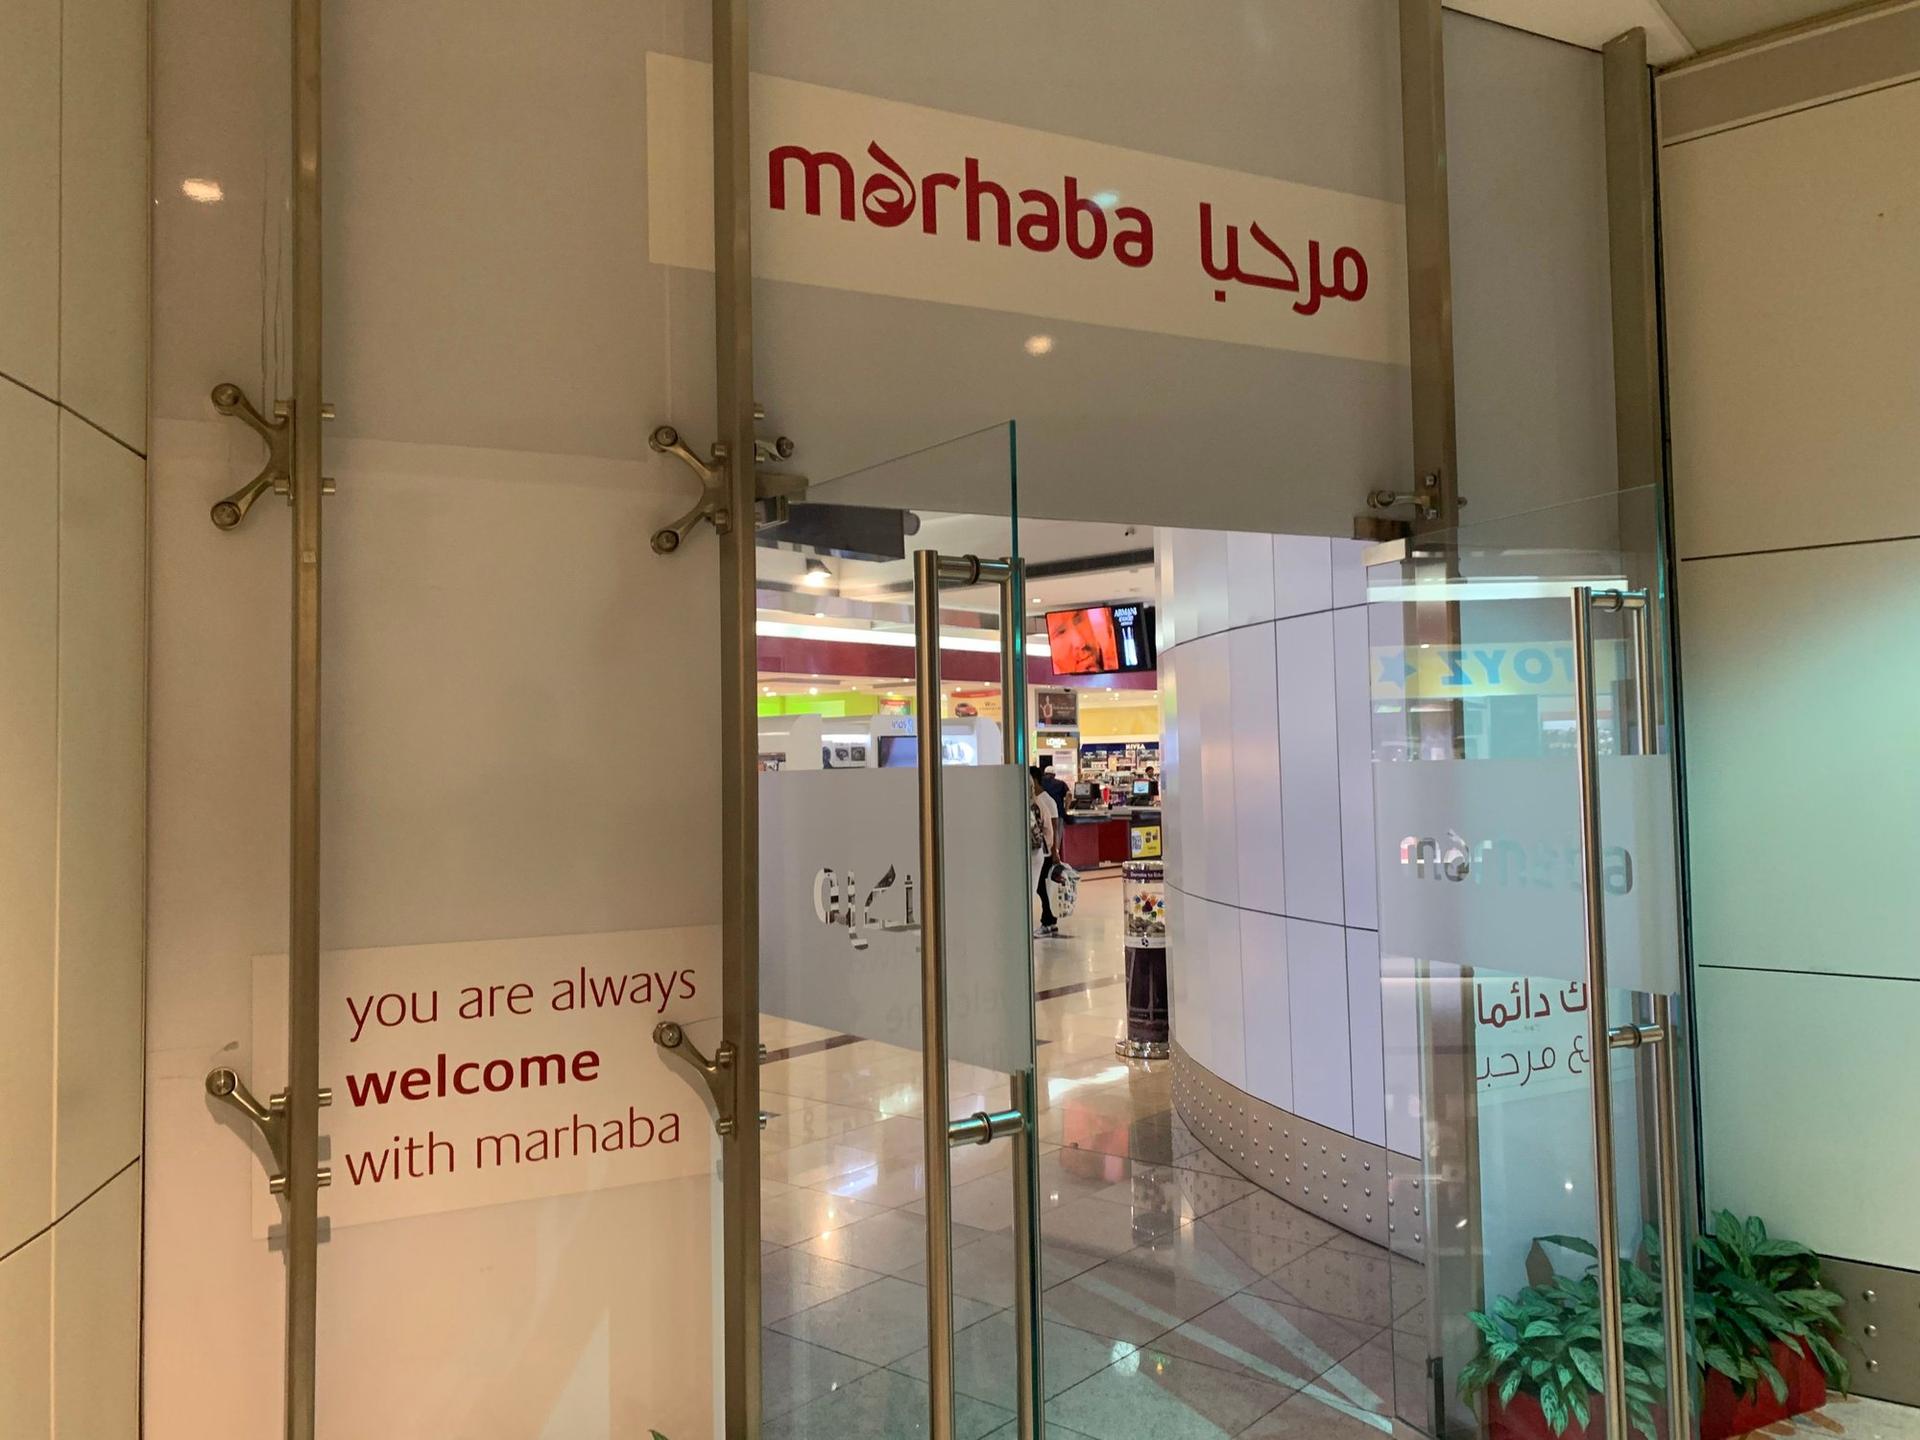 Marhaba Lounge image 32 of 44